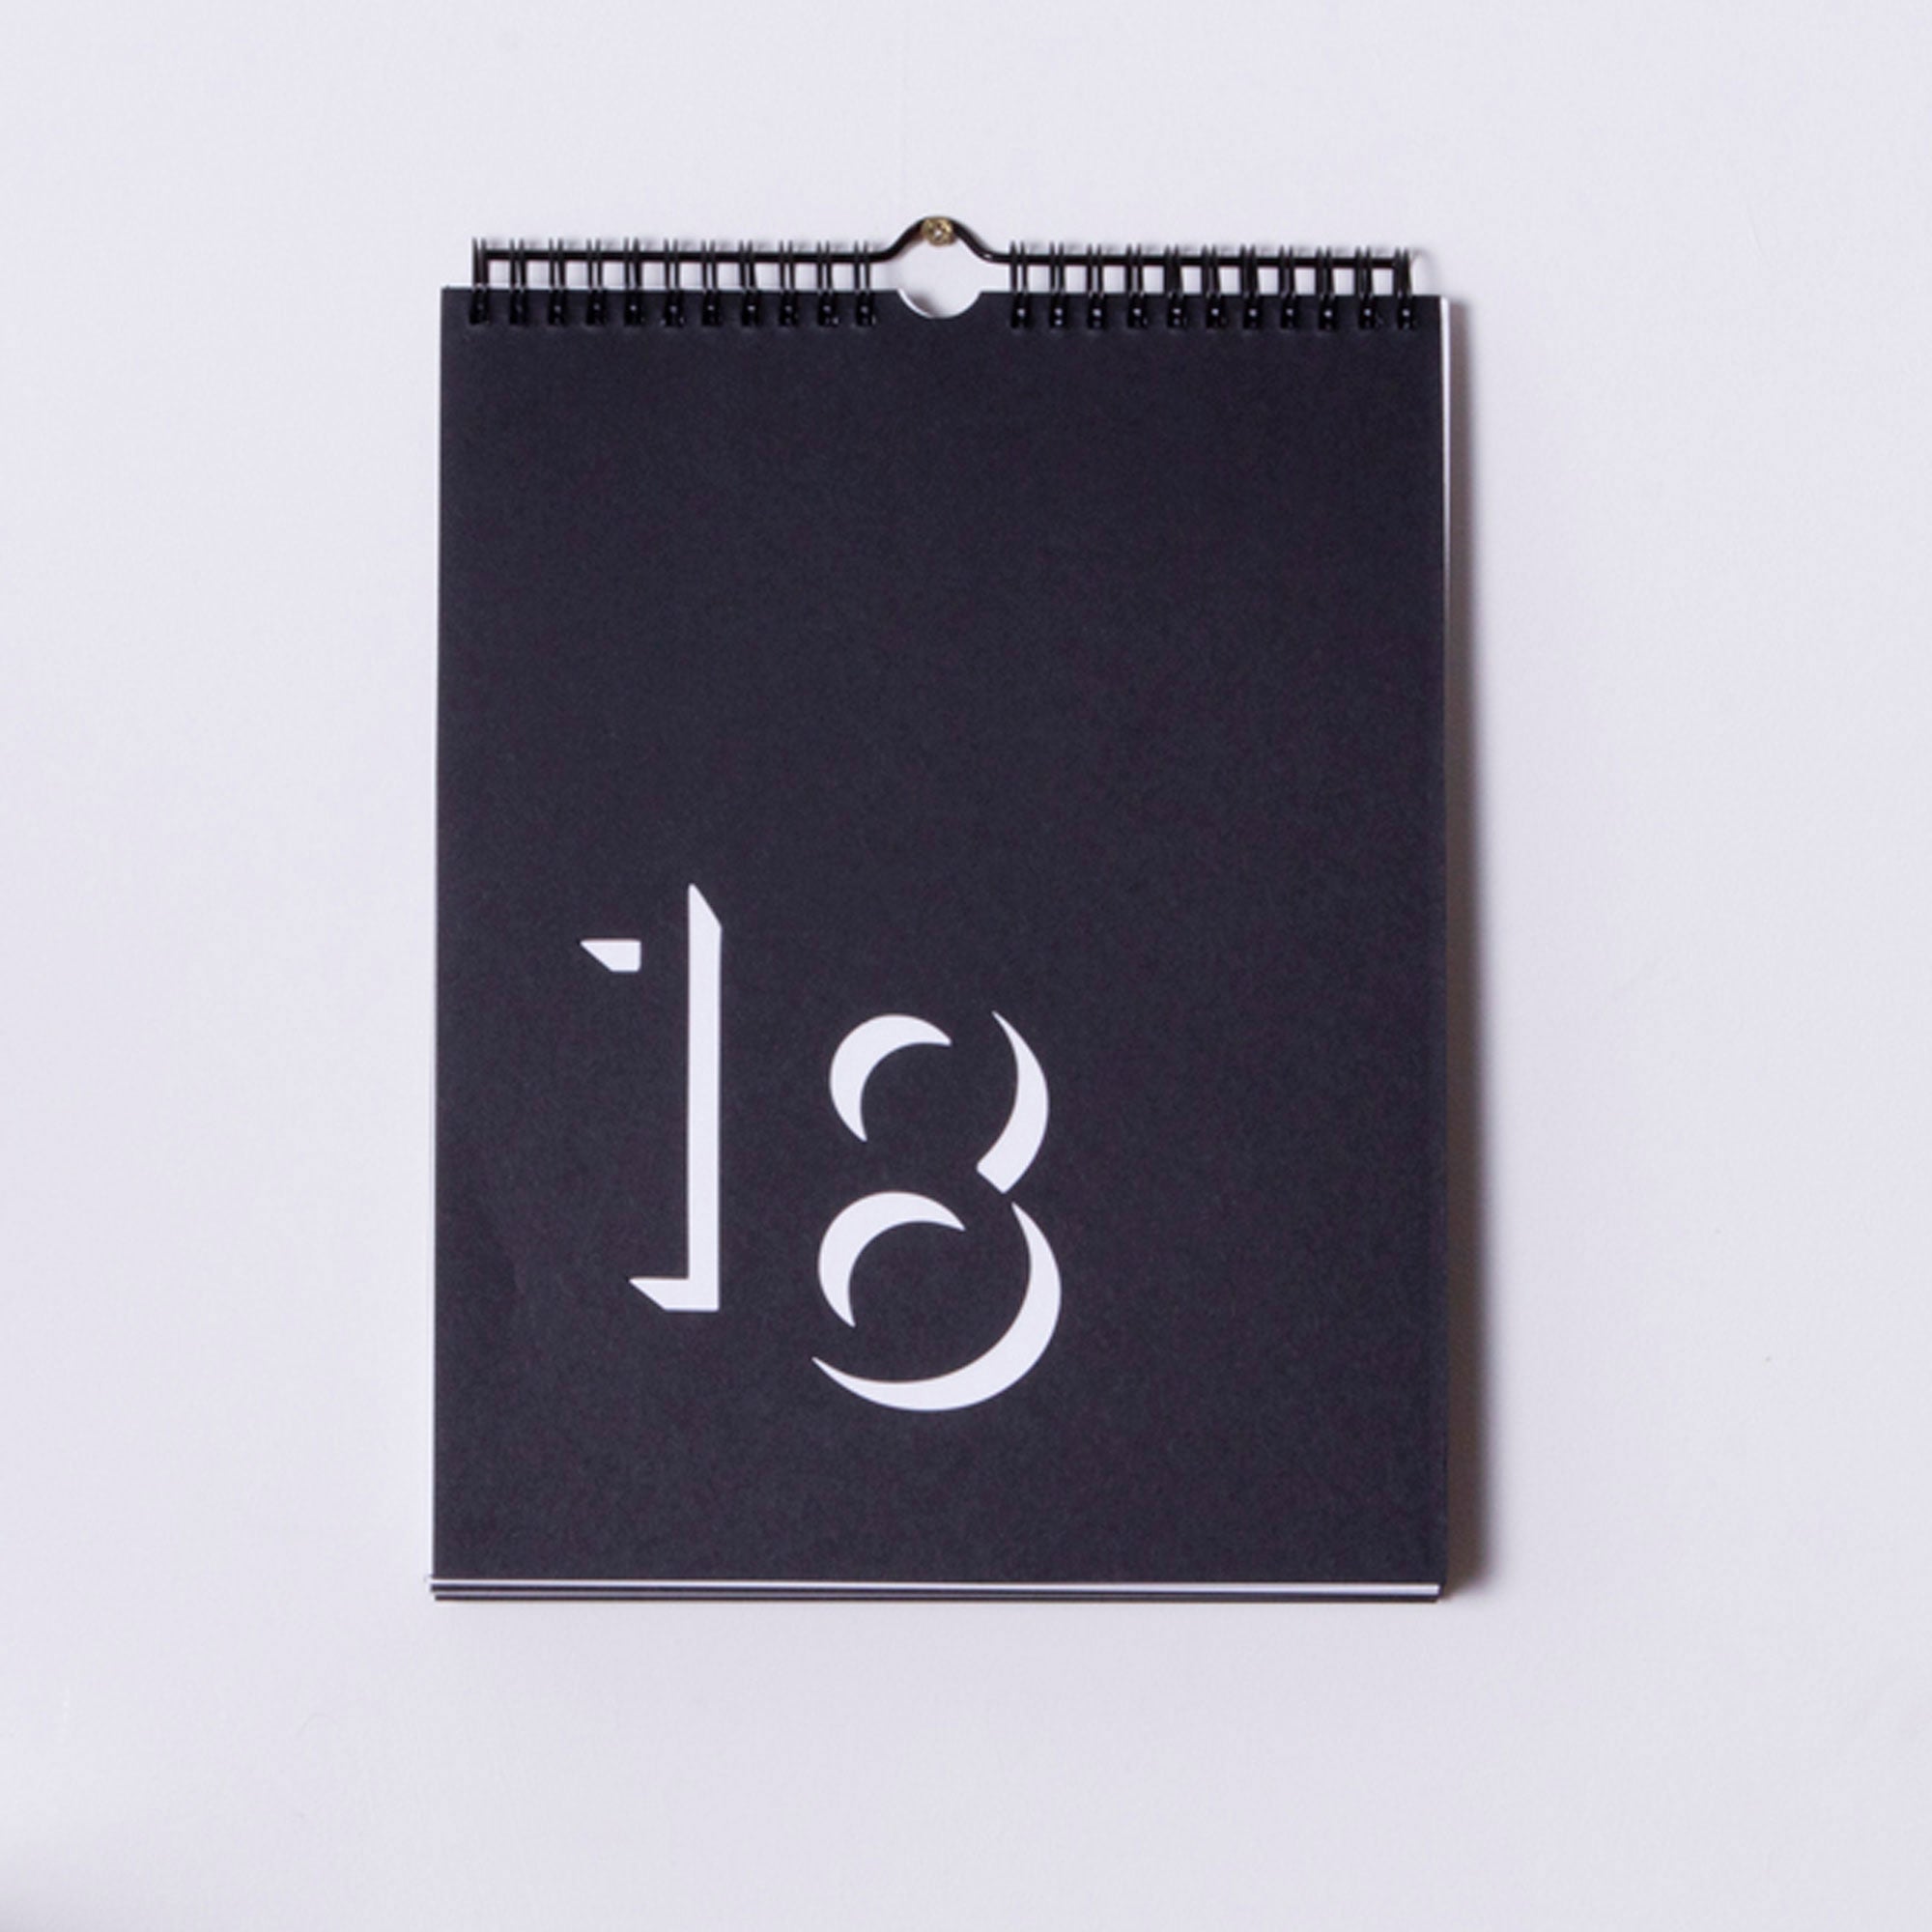 Block Flip Perpetual Calendar - Black and White